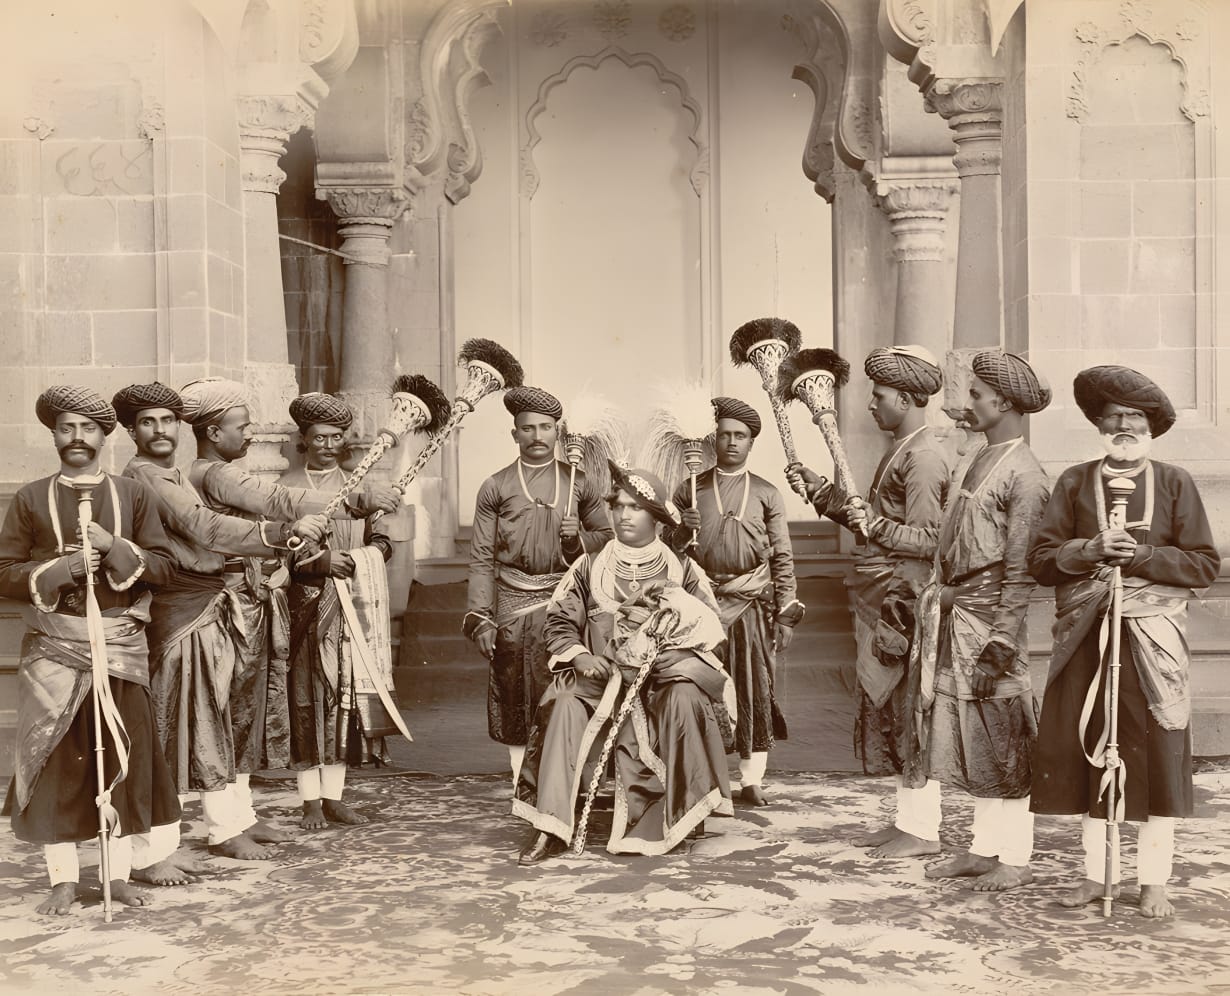 शाहू महाराज शाही पोशाखात बसलेले असताना पॅलेसच्या आवारात काढलेले छायाचित्र